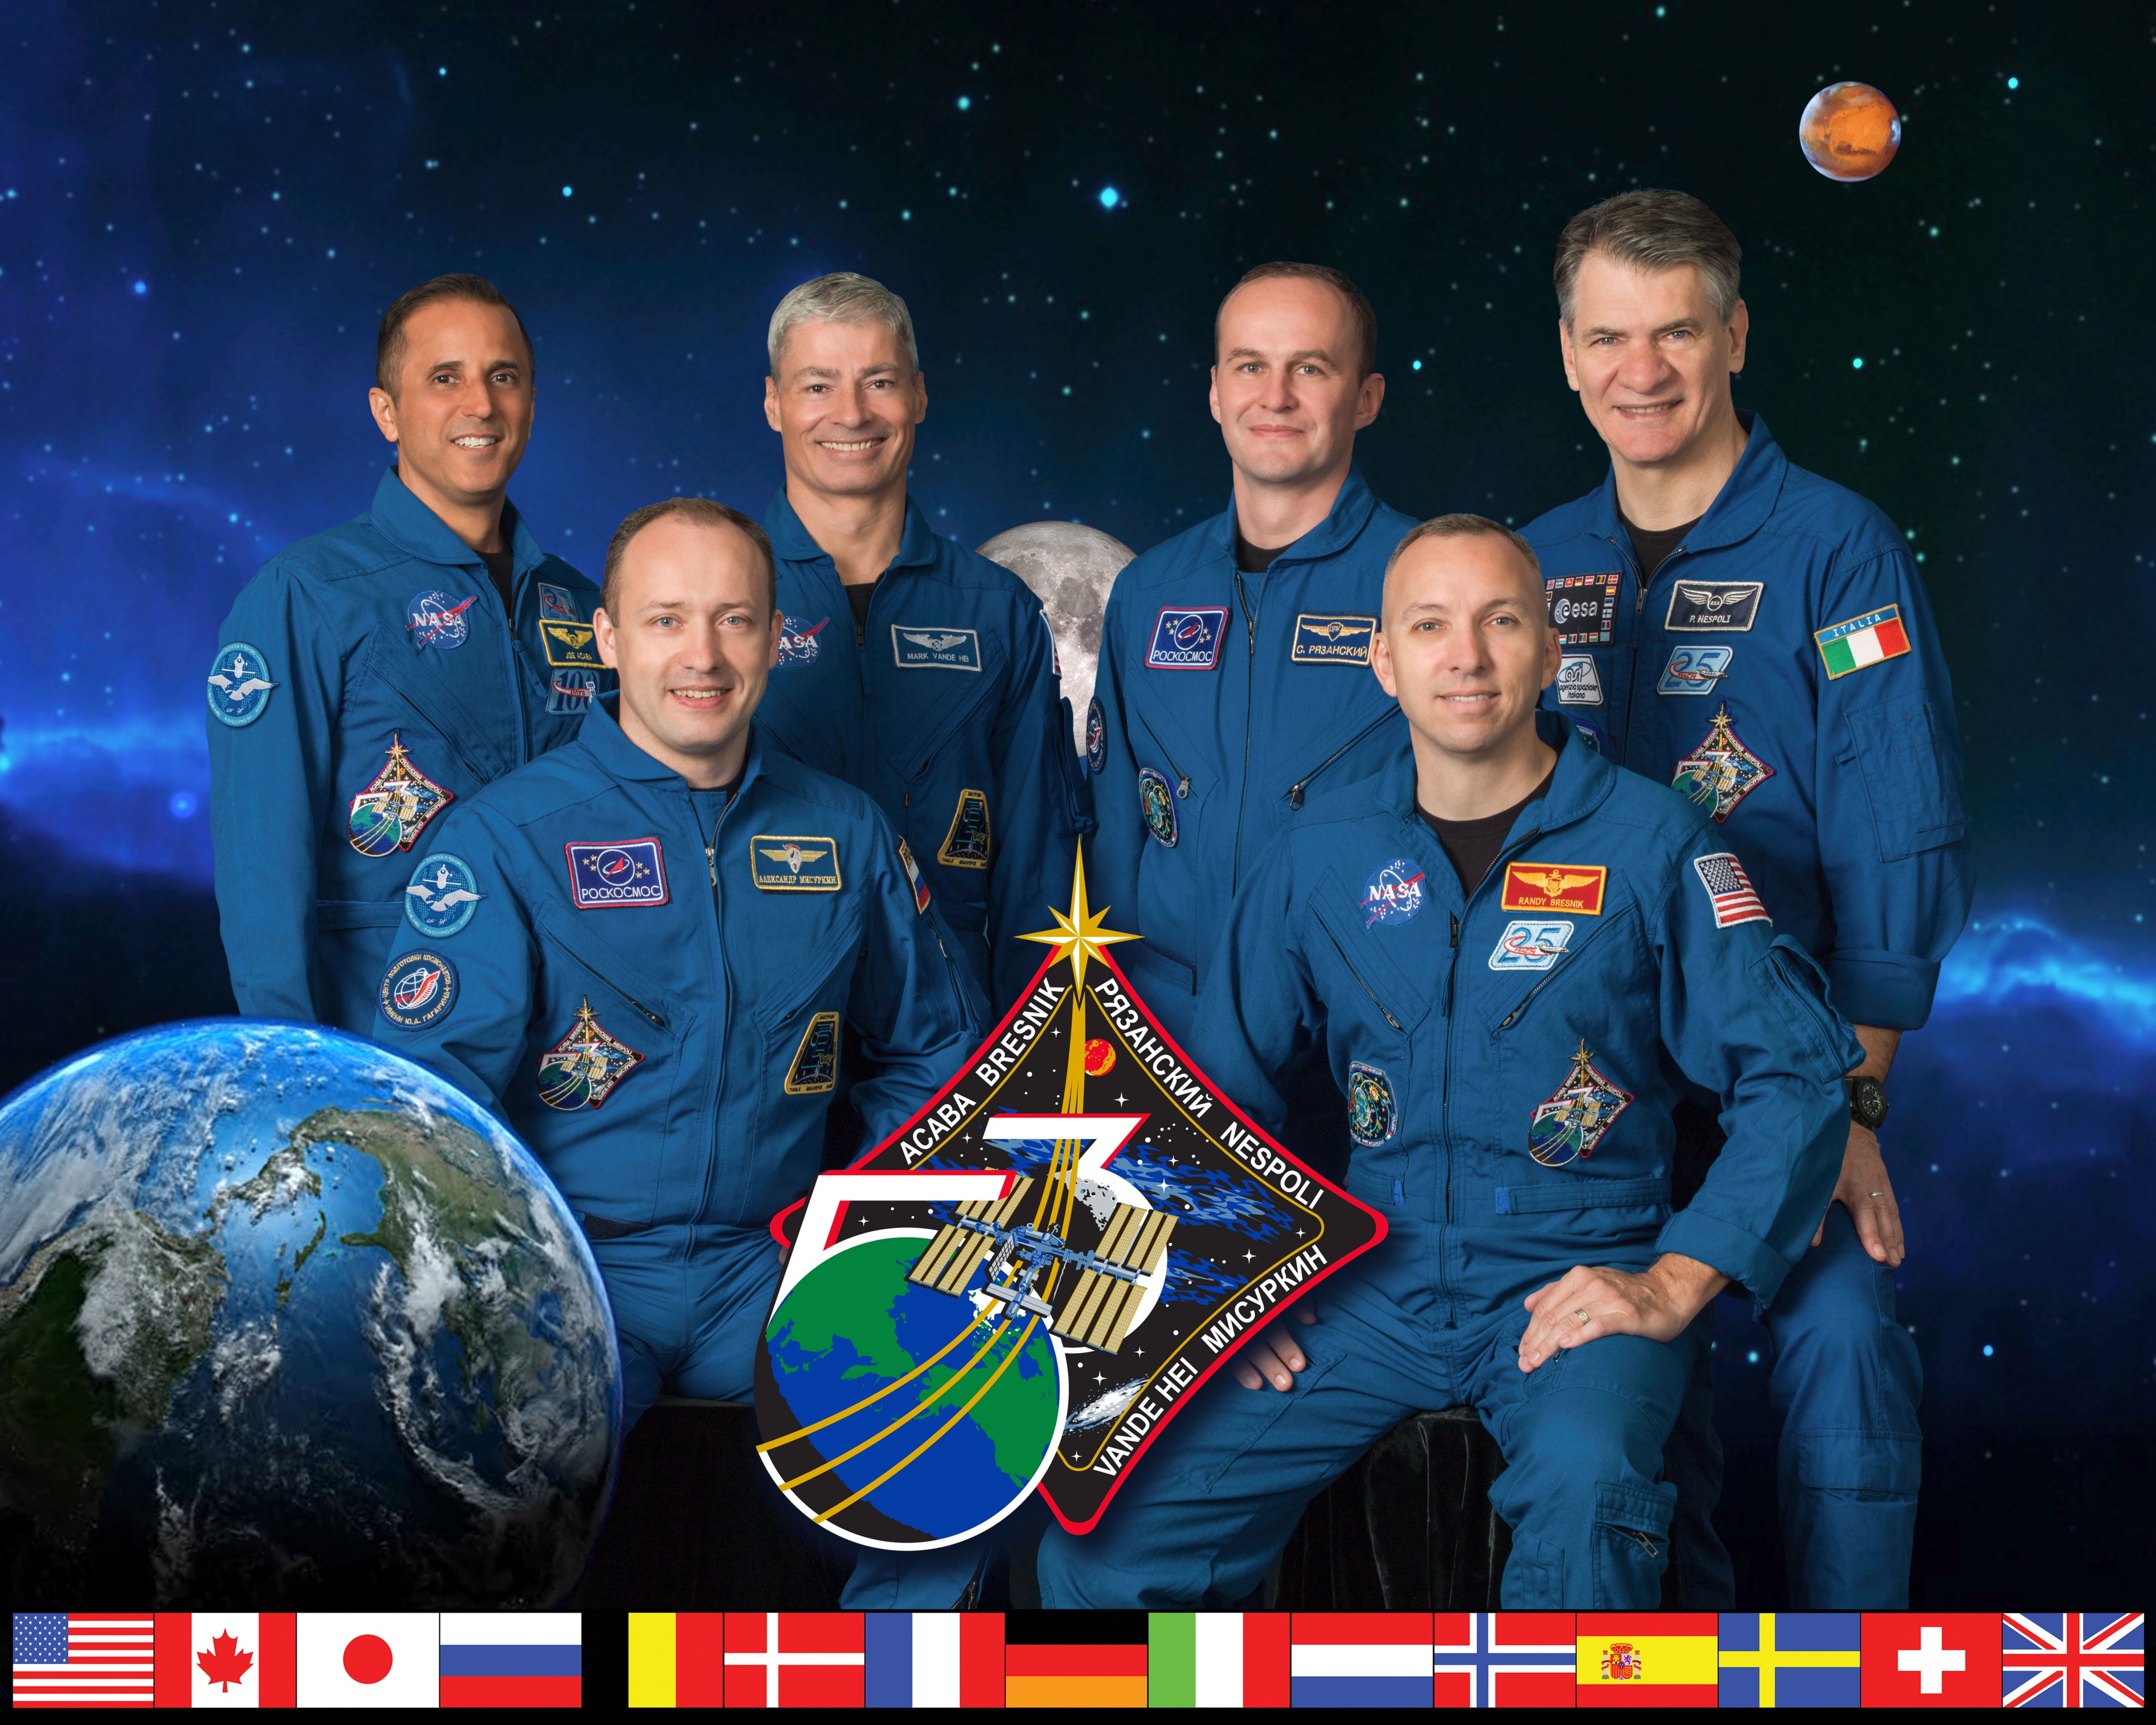 Expedition 53 crew portrait